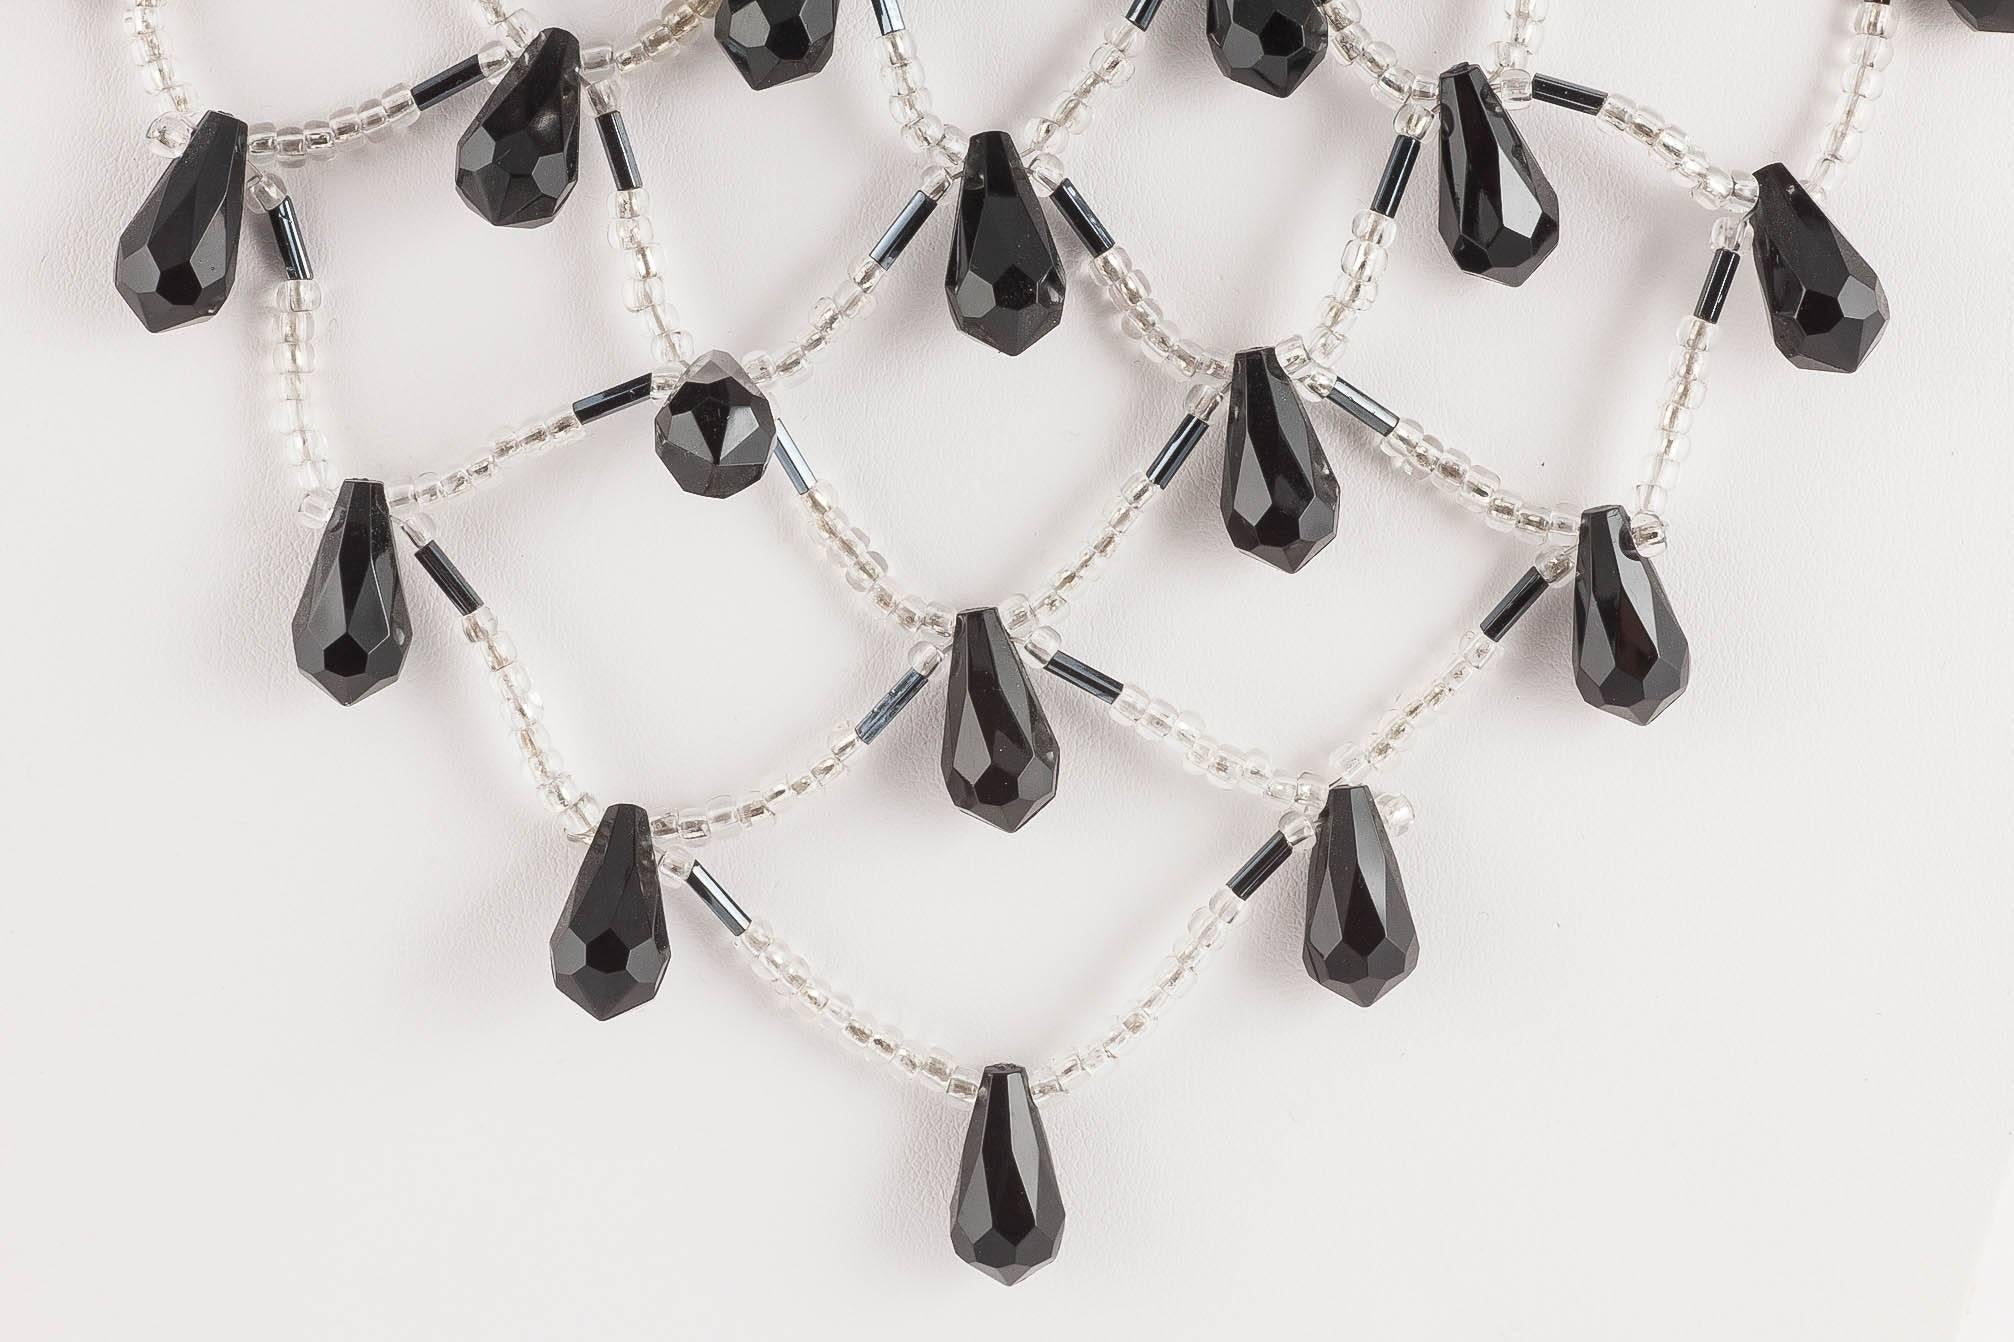 Diese auffällige Latzkette besteht aus größeren facettierten Kunststoff-Tränenperlen, hämatitfarbenen Bügelperlen und klaren runden Perlen, die alle in einem komplizierten gewebten Muster zusammengefügt sind, das dramatisch und auffallend aussieht.